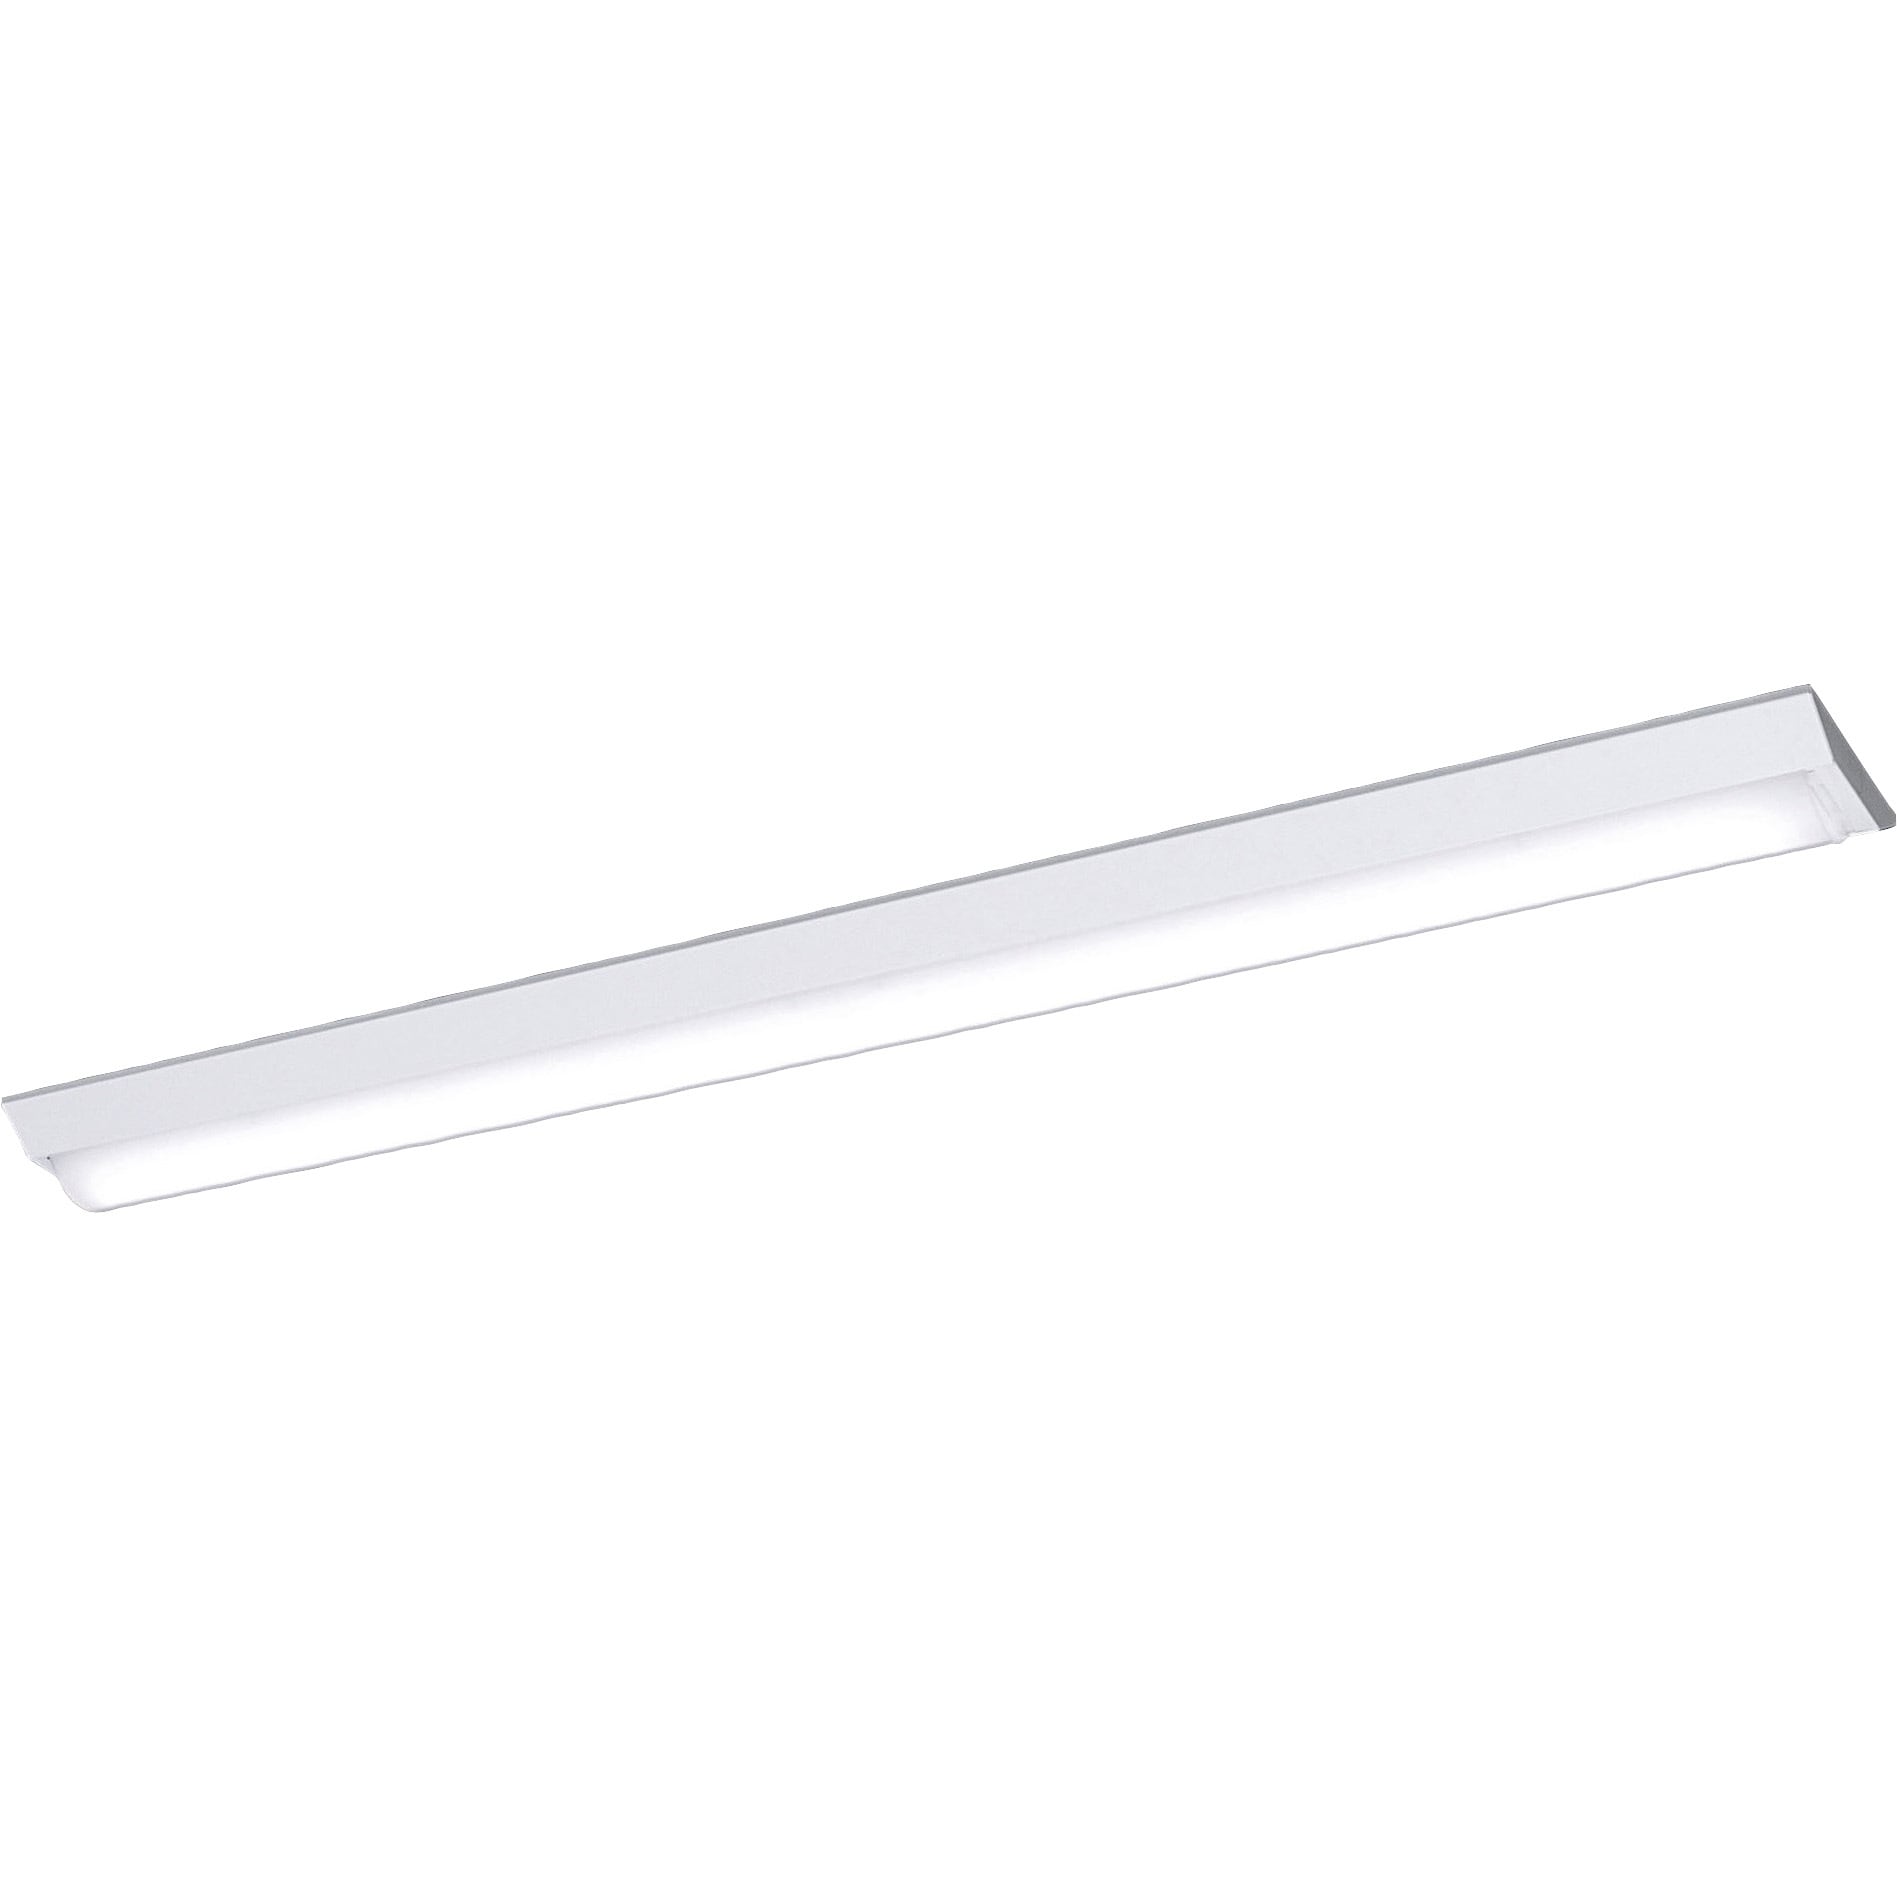 パナソニック ベースライト iスタイル 40形 一体型LED 笠なし型 Hf蛍光